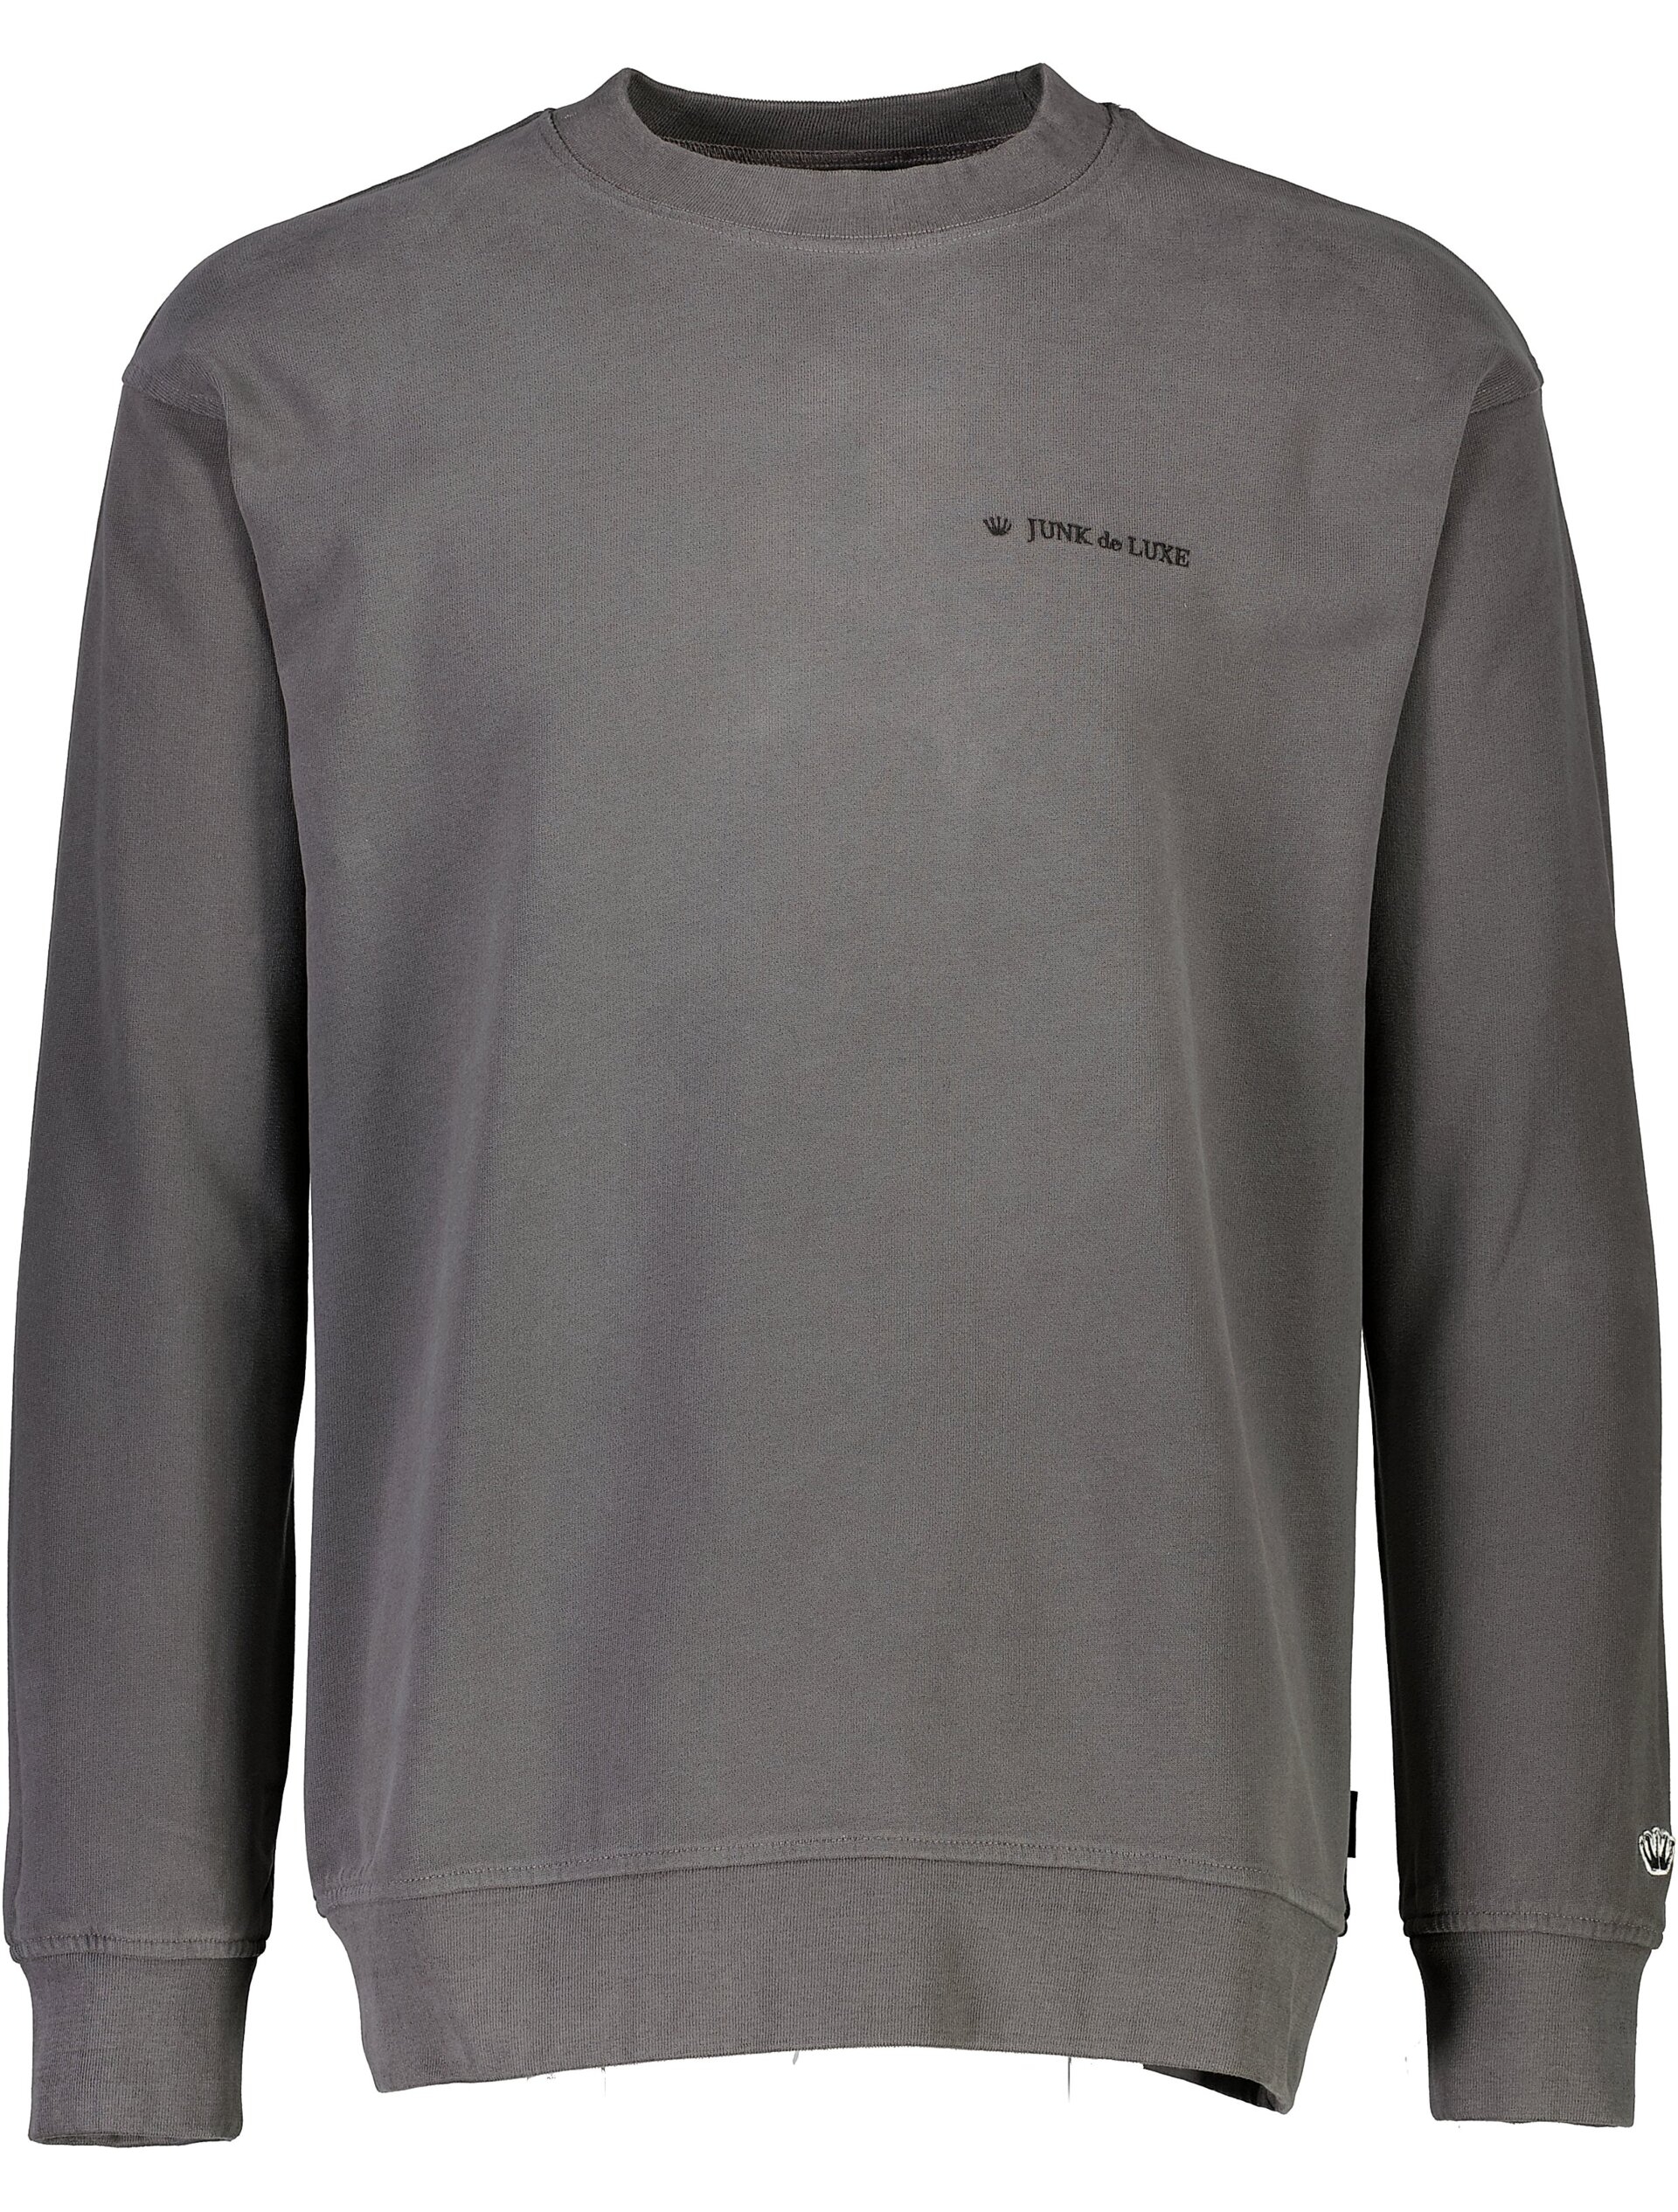 Junk de Luxe Sweatshirt grey / charcoal